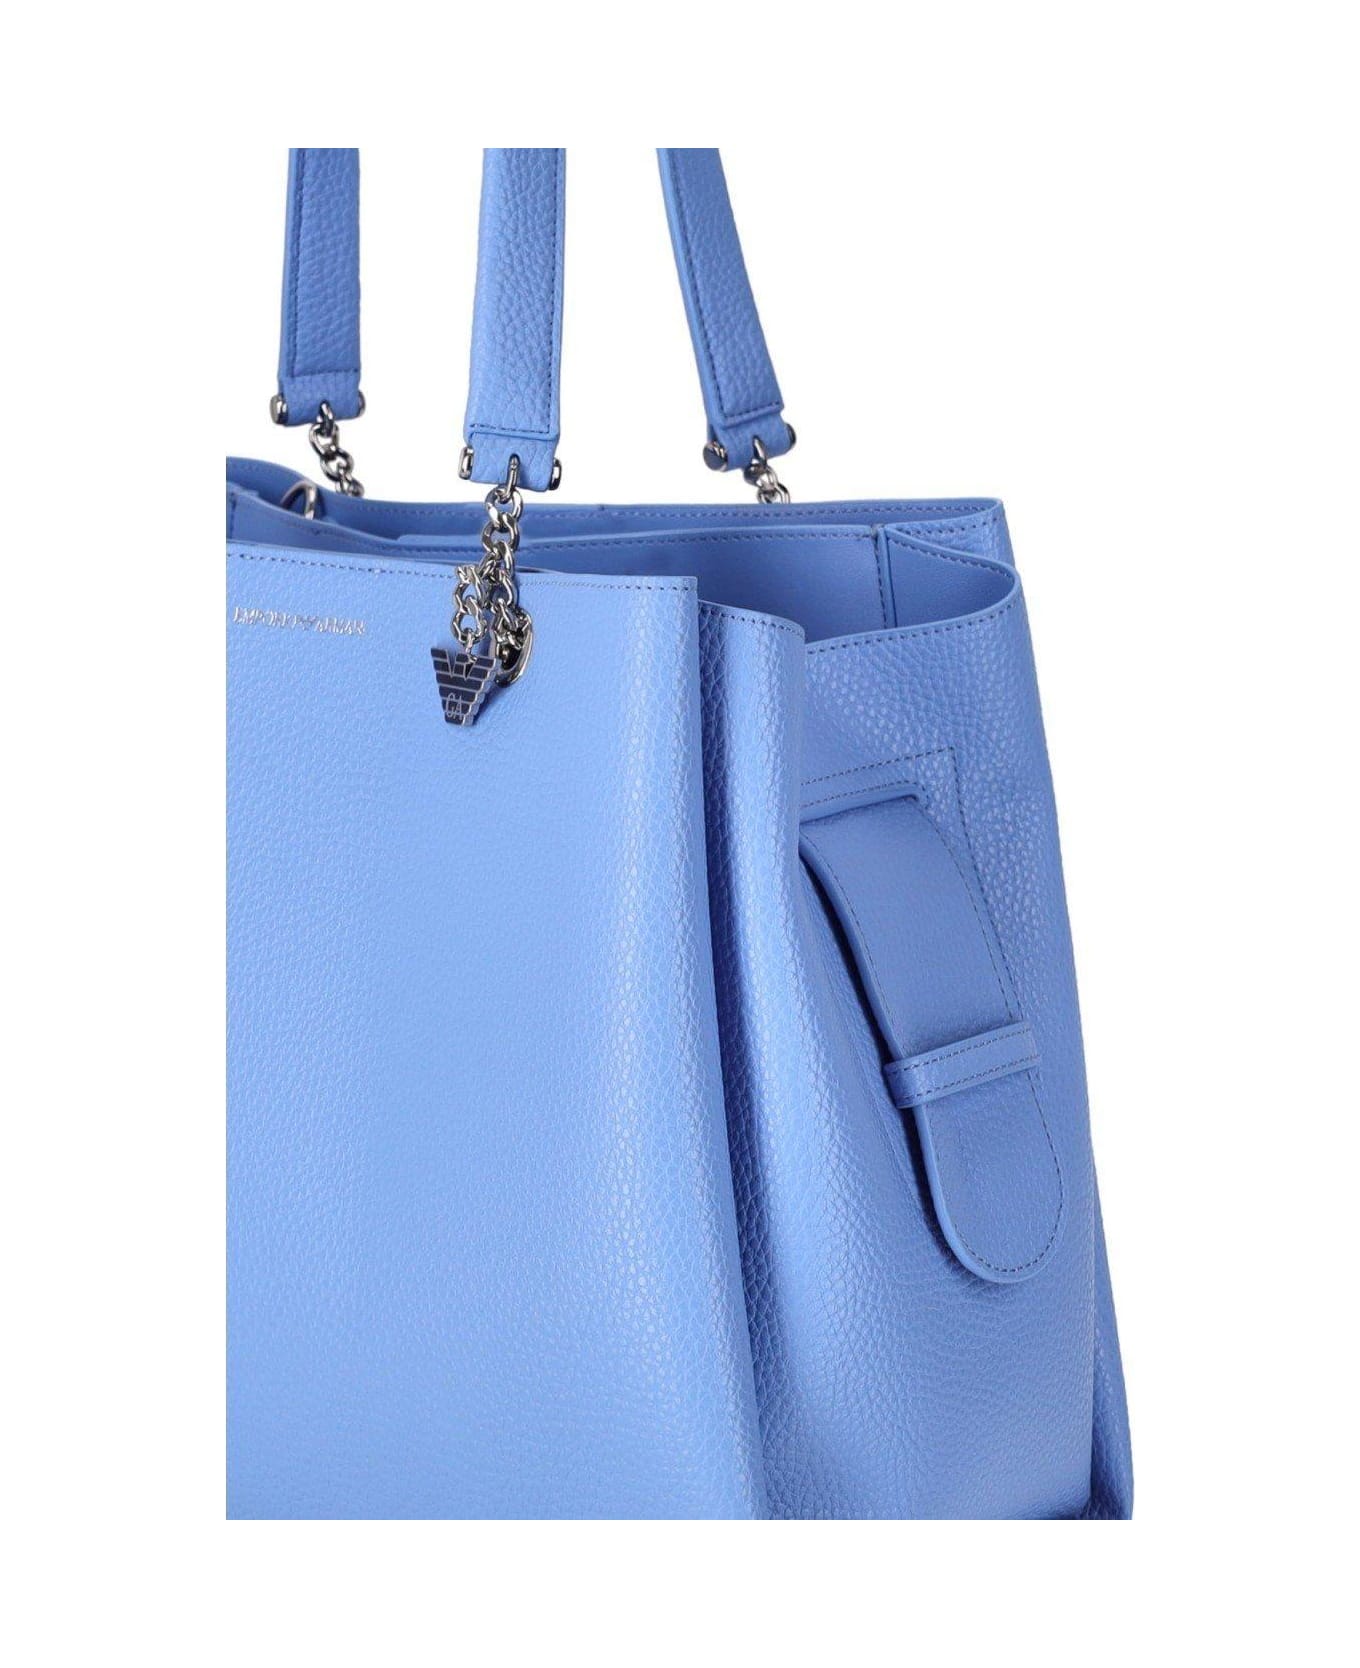 Emporio Armani Logo Printed Tote Bag - Azzurro